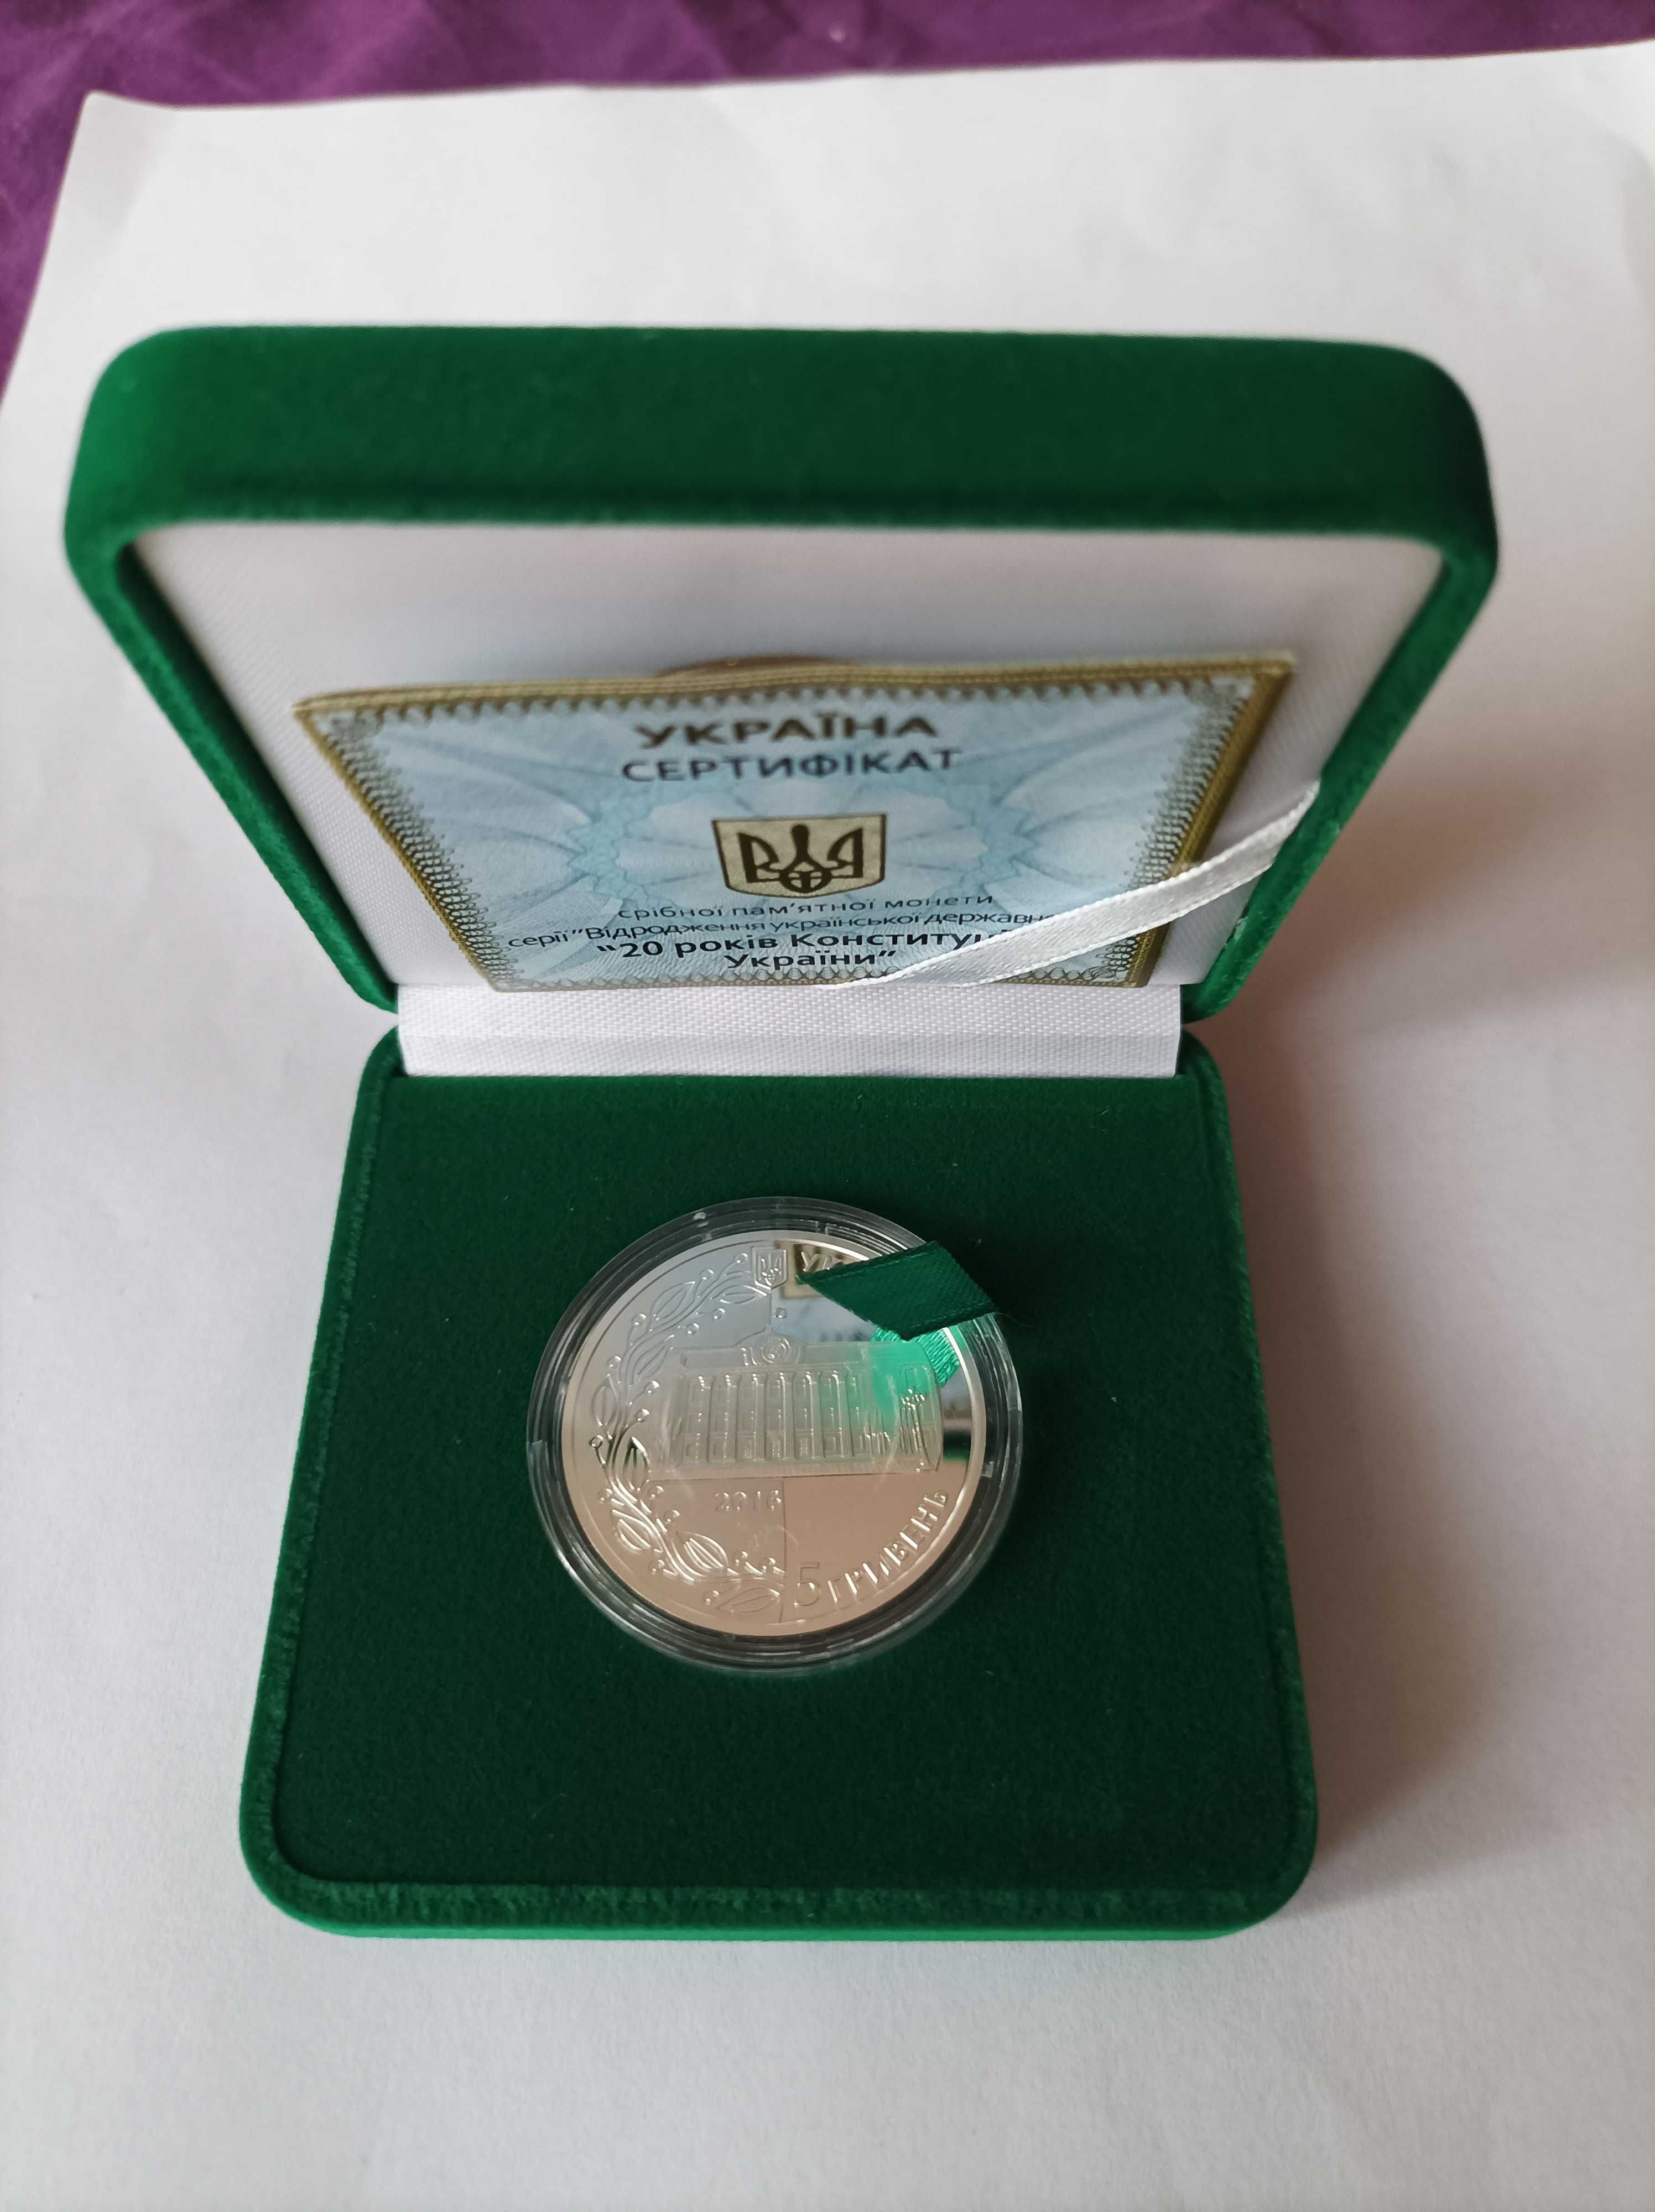 20 років Конституції України 2016рік монета в футлярі